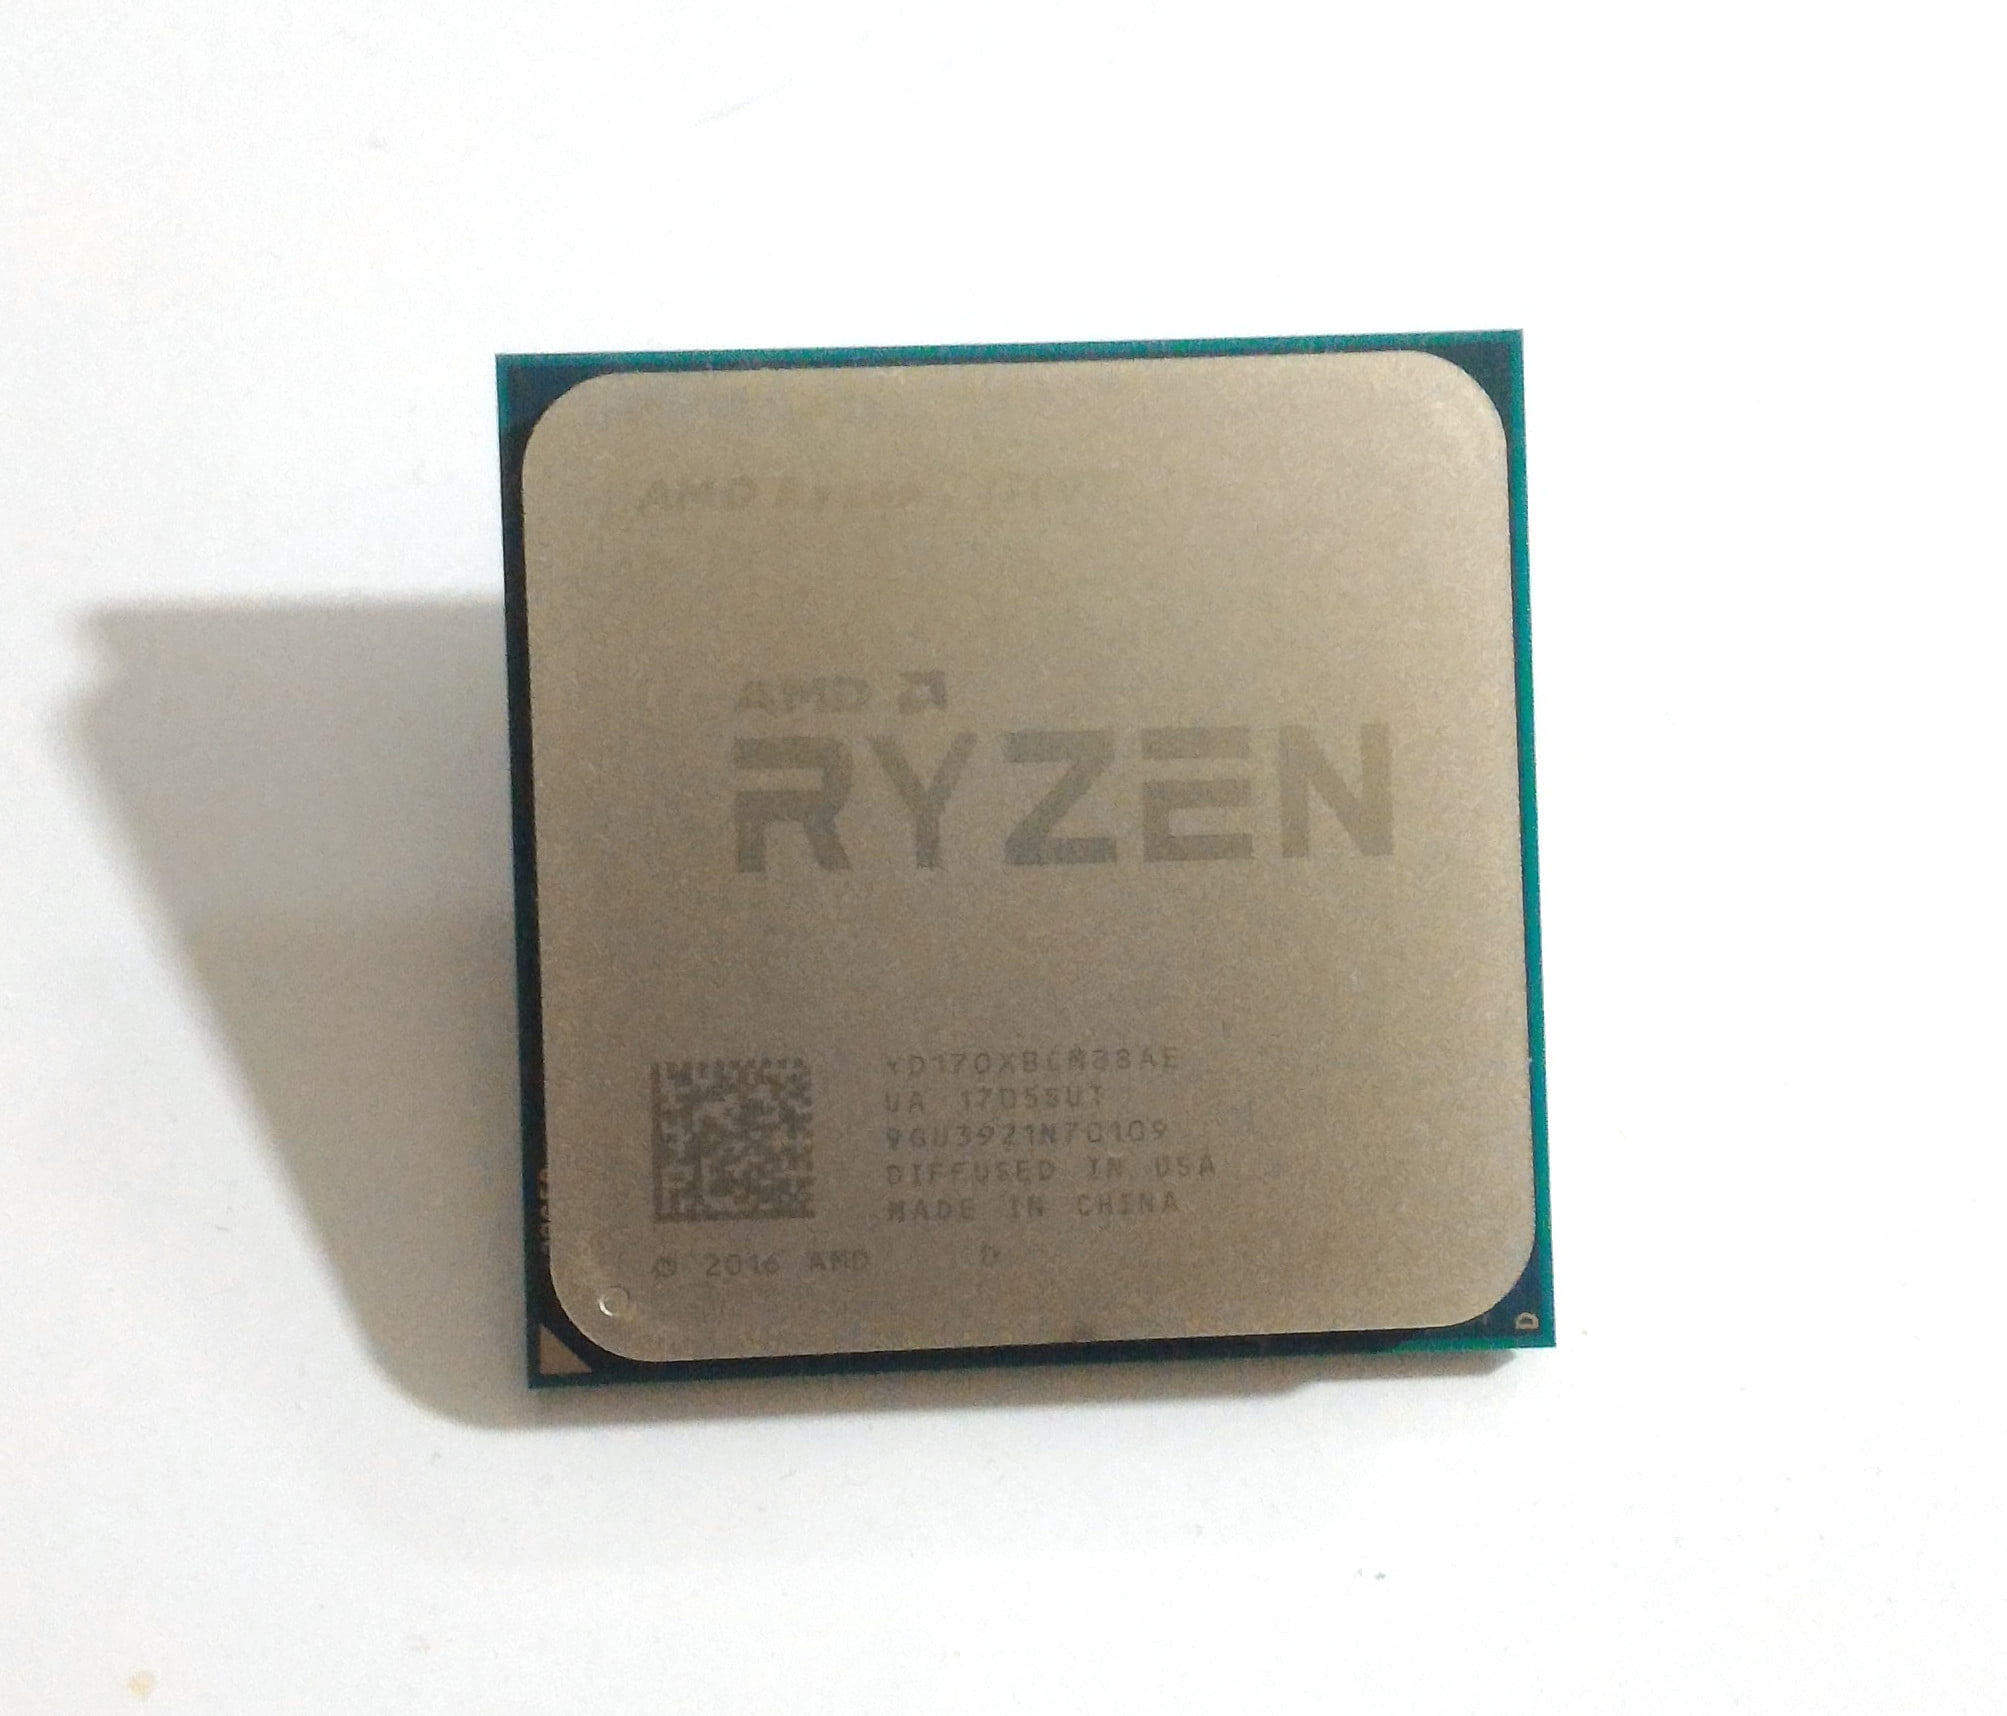 Review: AMD Ryzen 1700